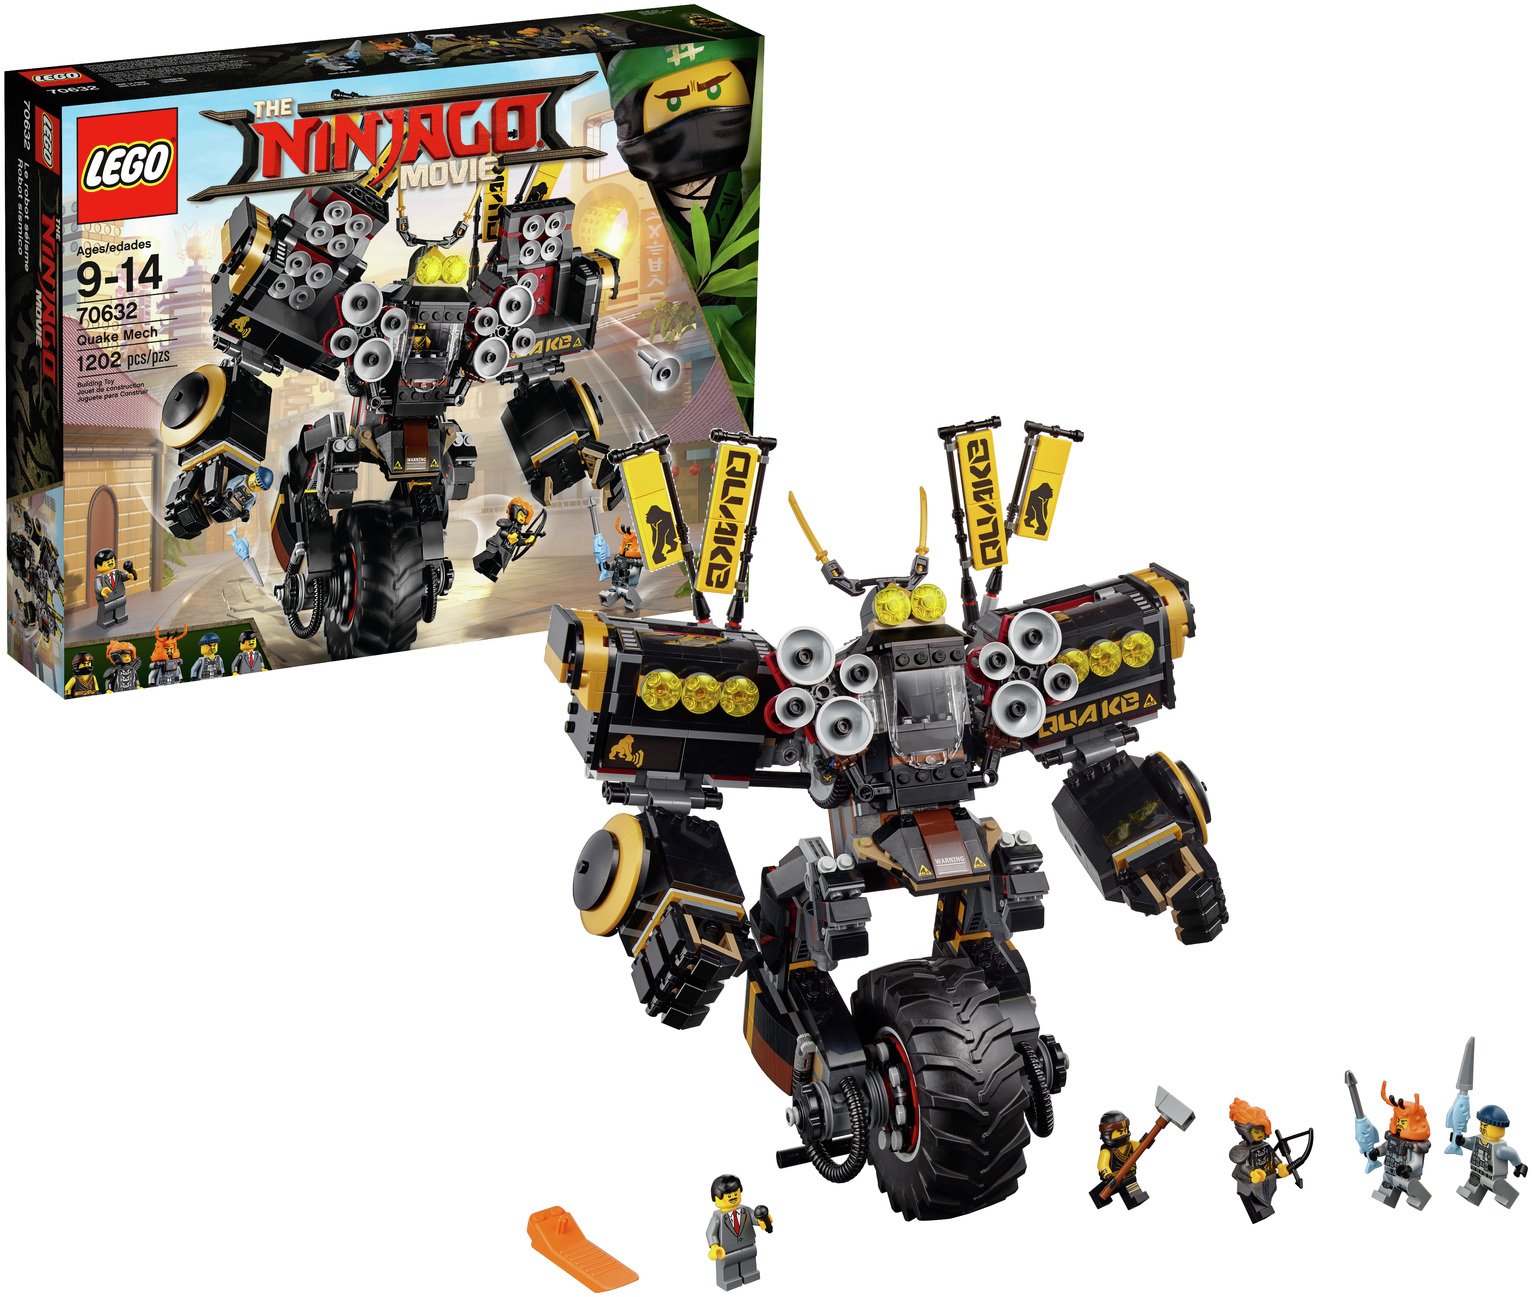 LEGO Ninjago Movie Quake Mech - 70632